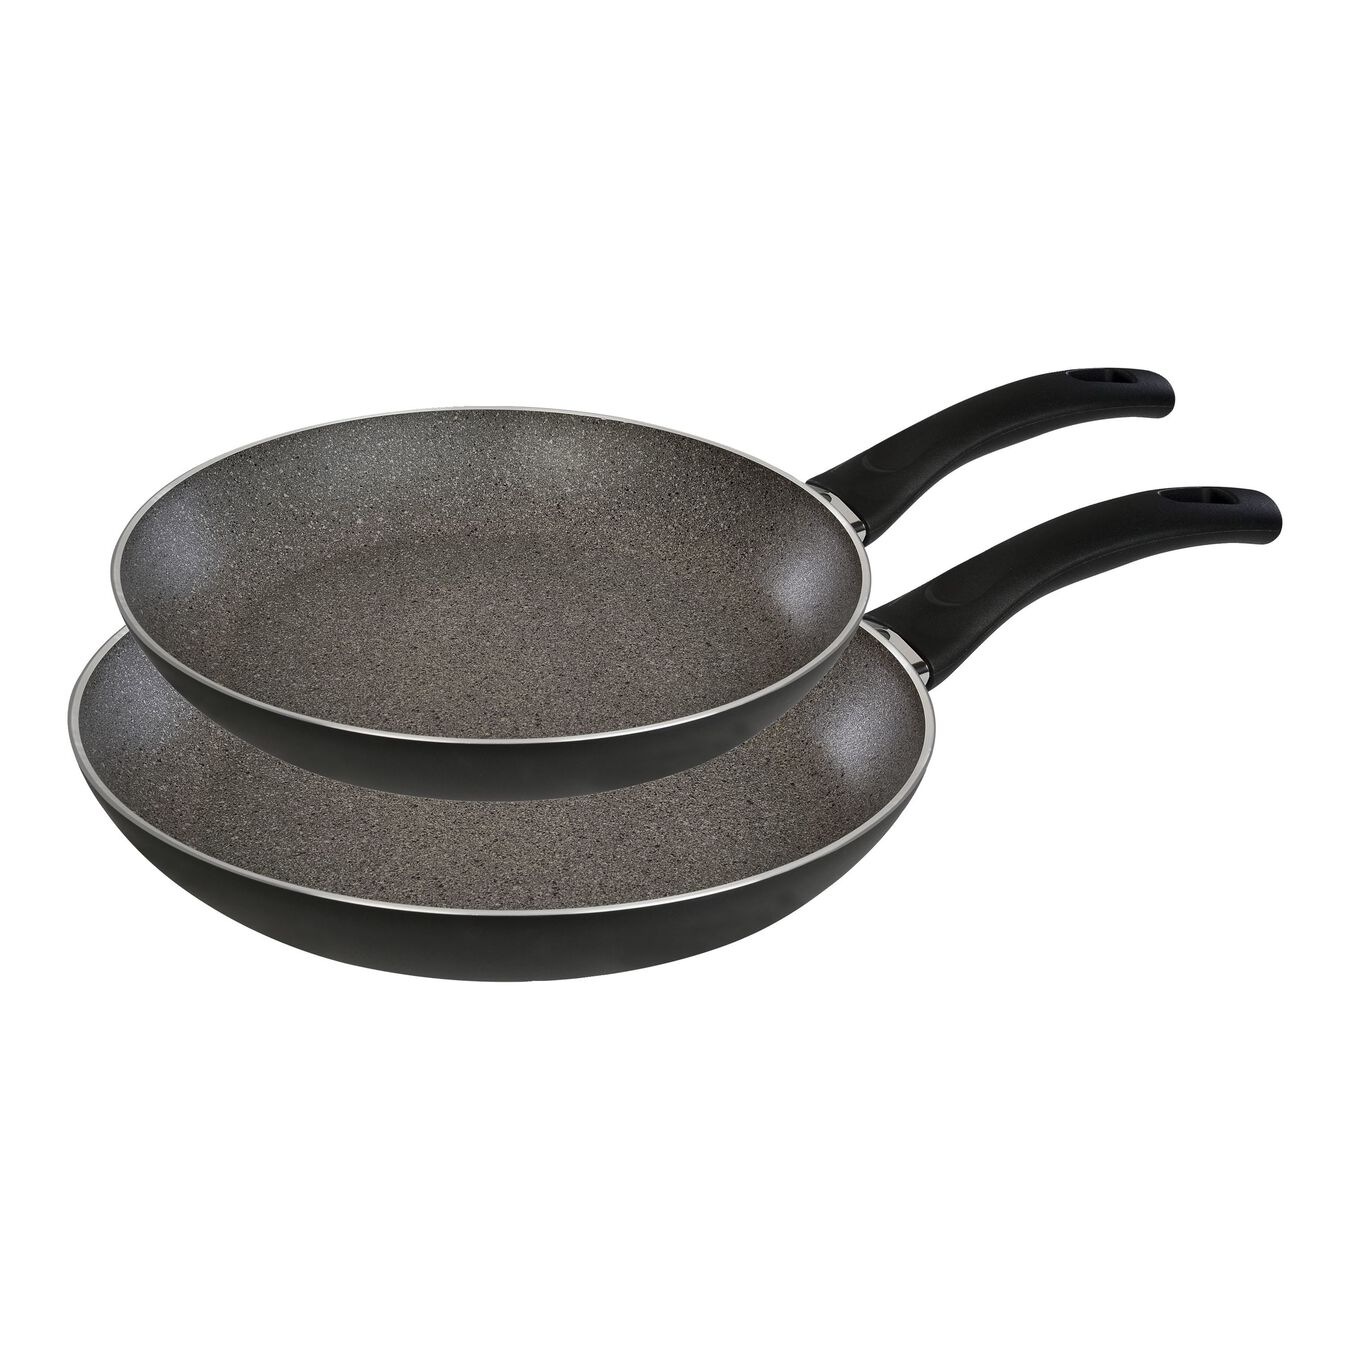 2 Piece aluminium Fry pan set,,large 1